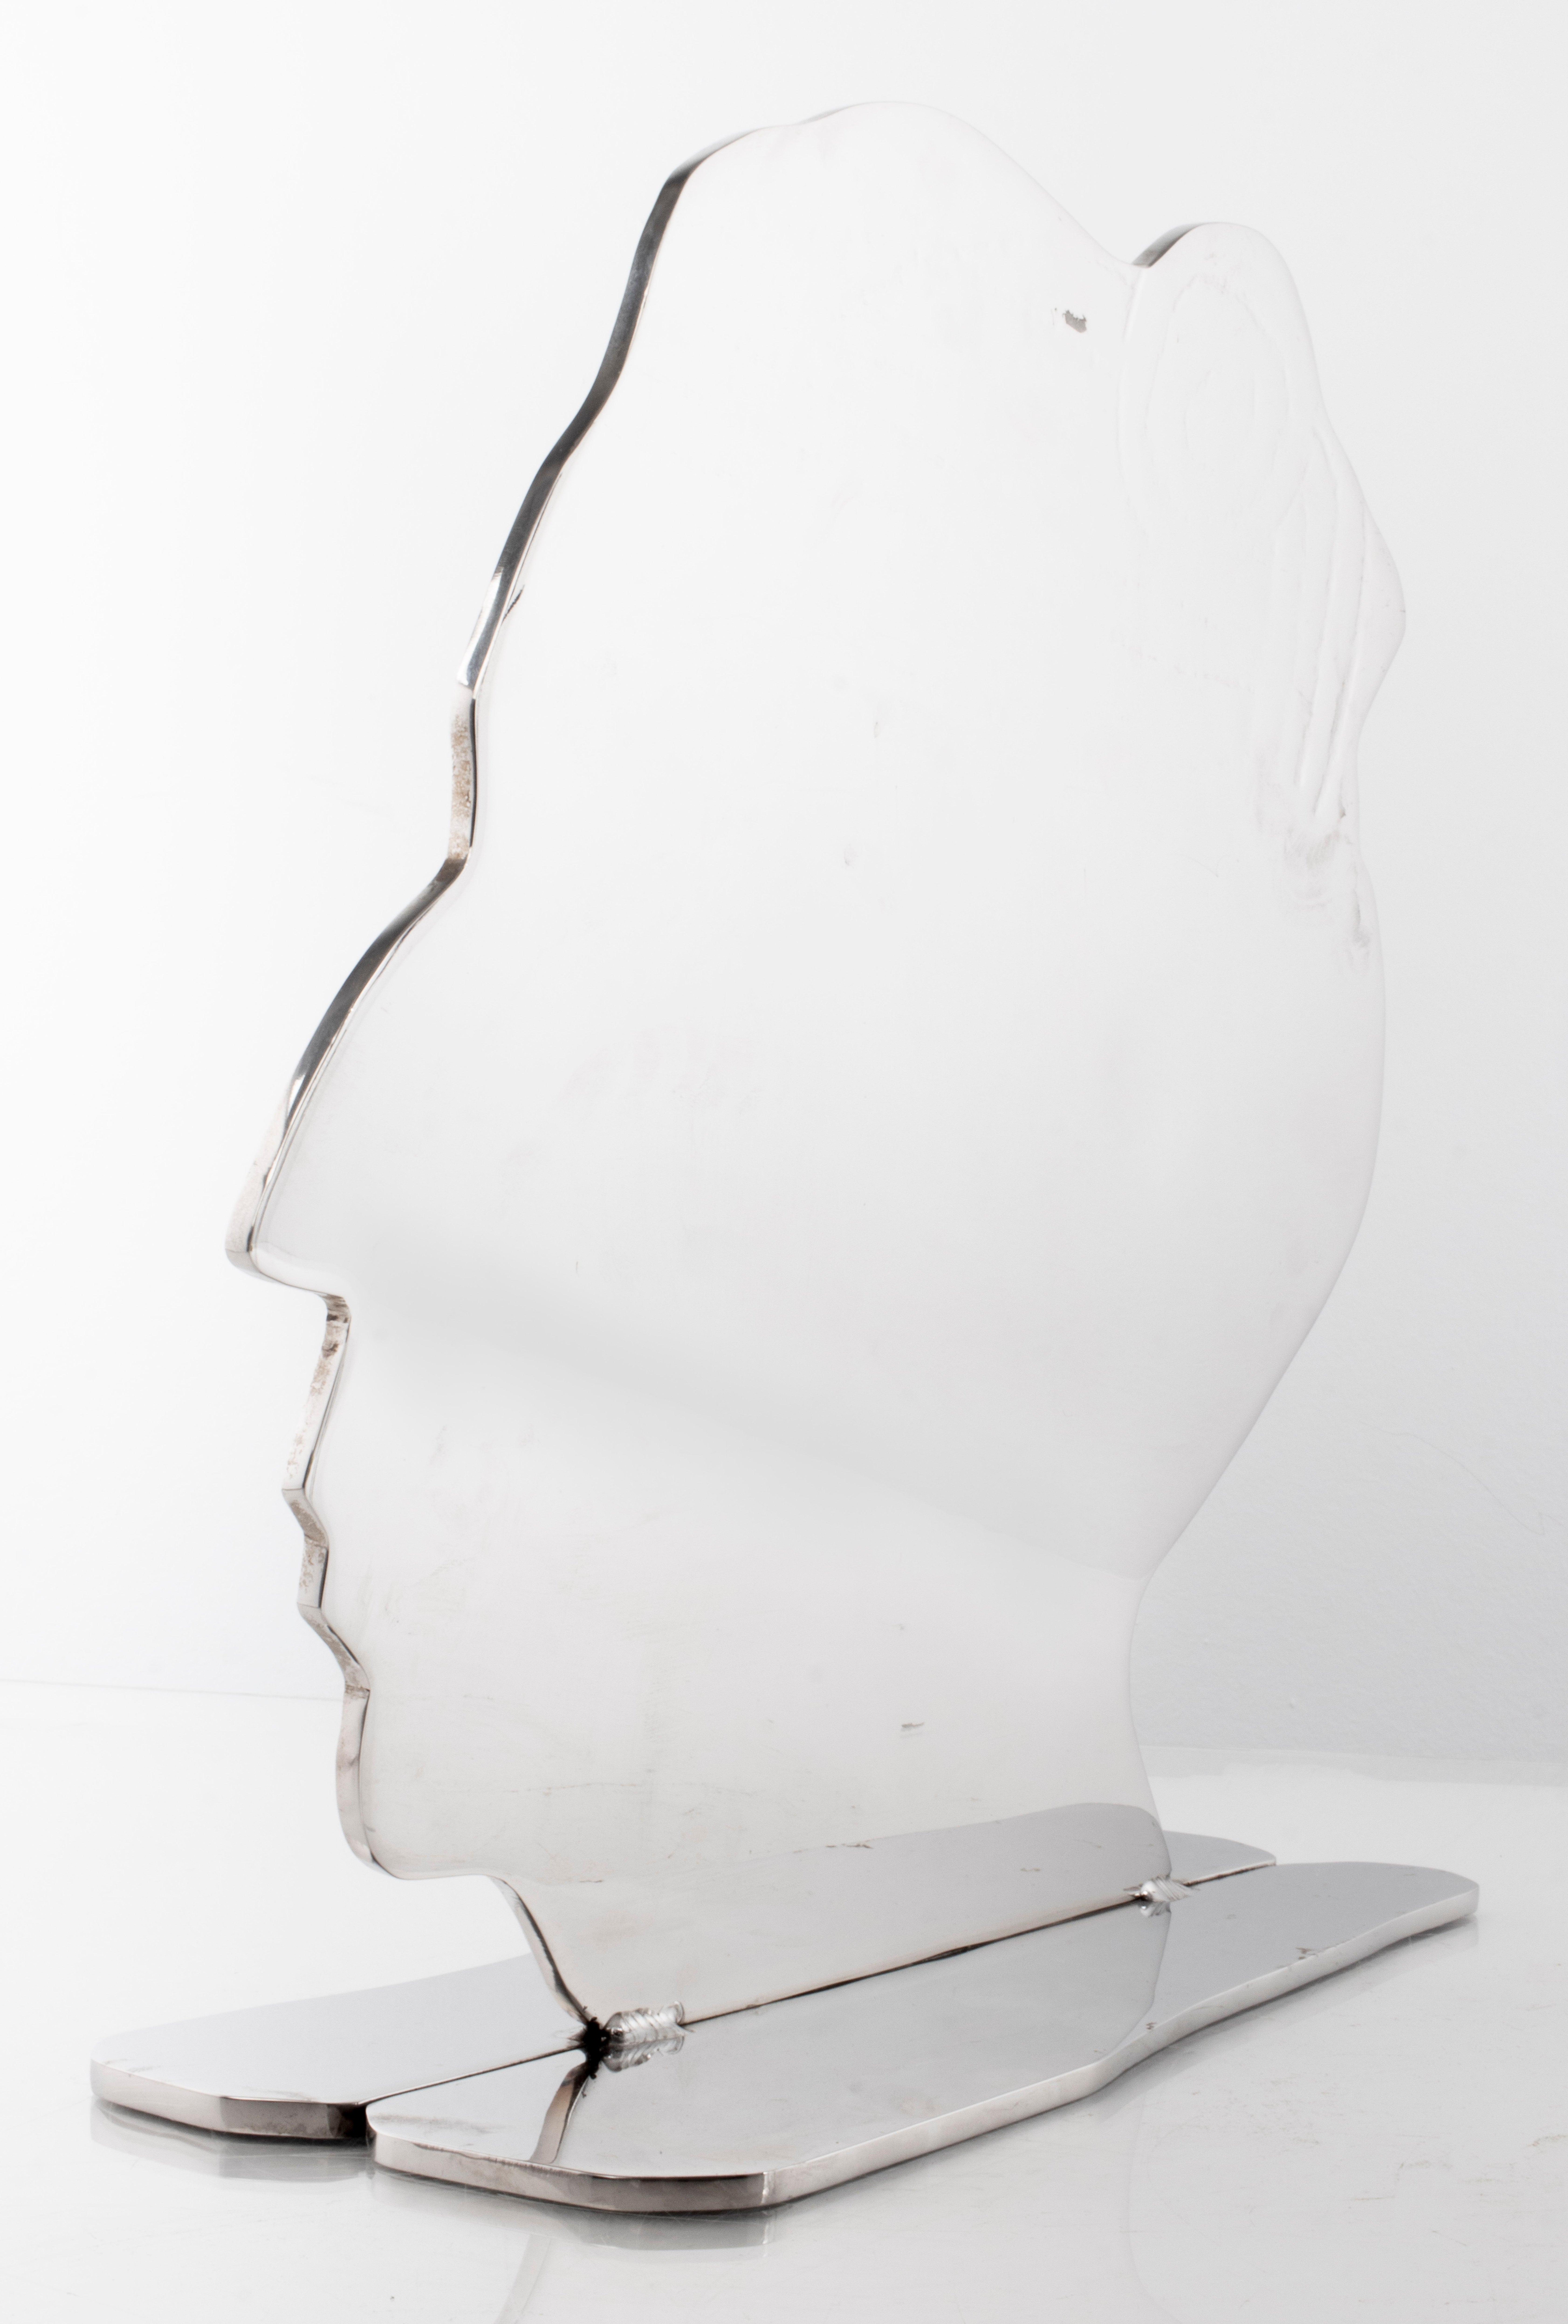 North American Jack Schuyler Post-Modern Chromed Steel Bust Sculpture For Sale